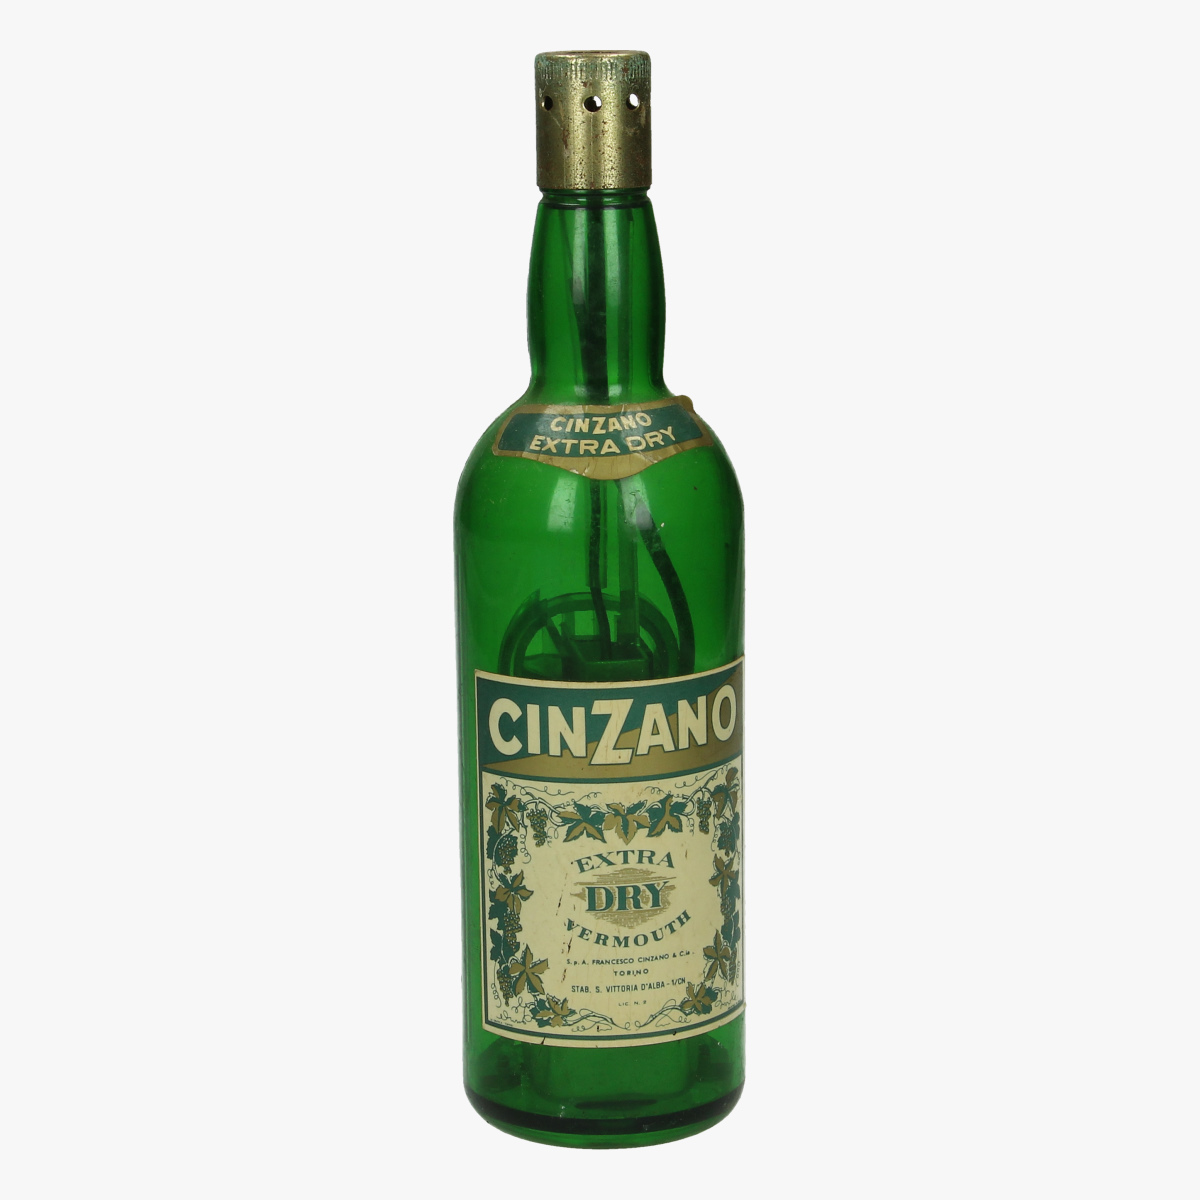 Afbeeldingen van oude aansteker fles cinzano